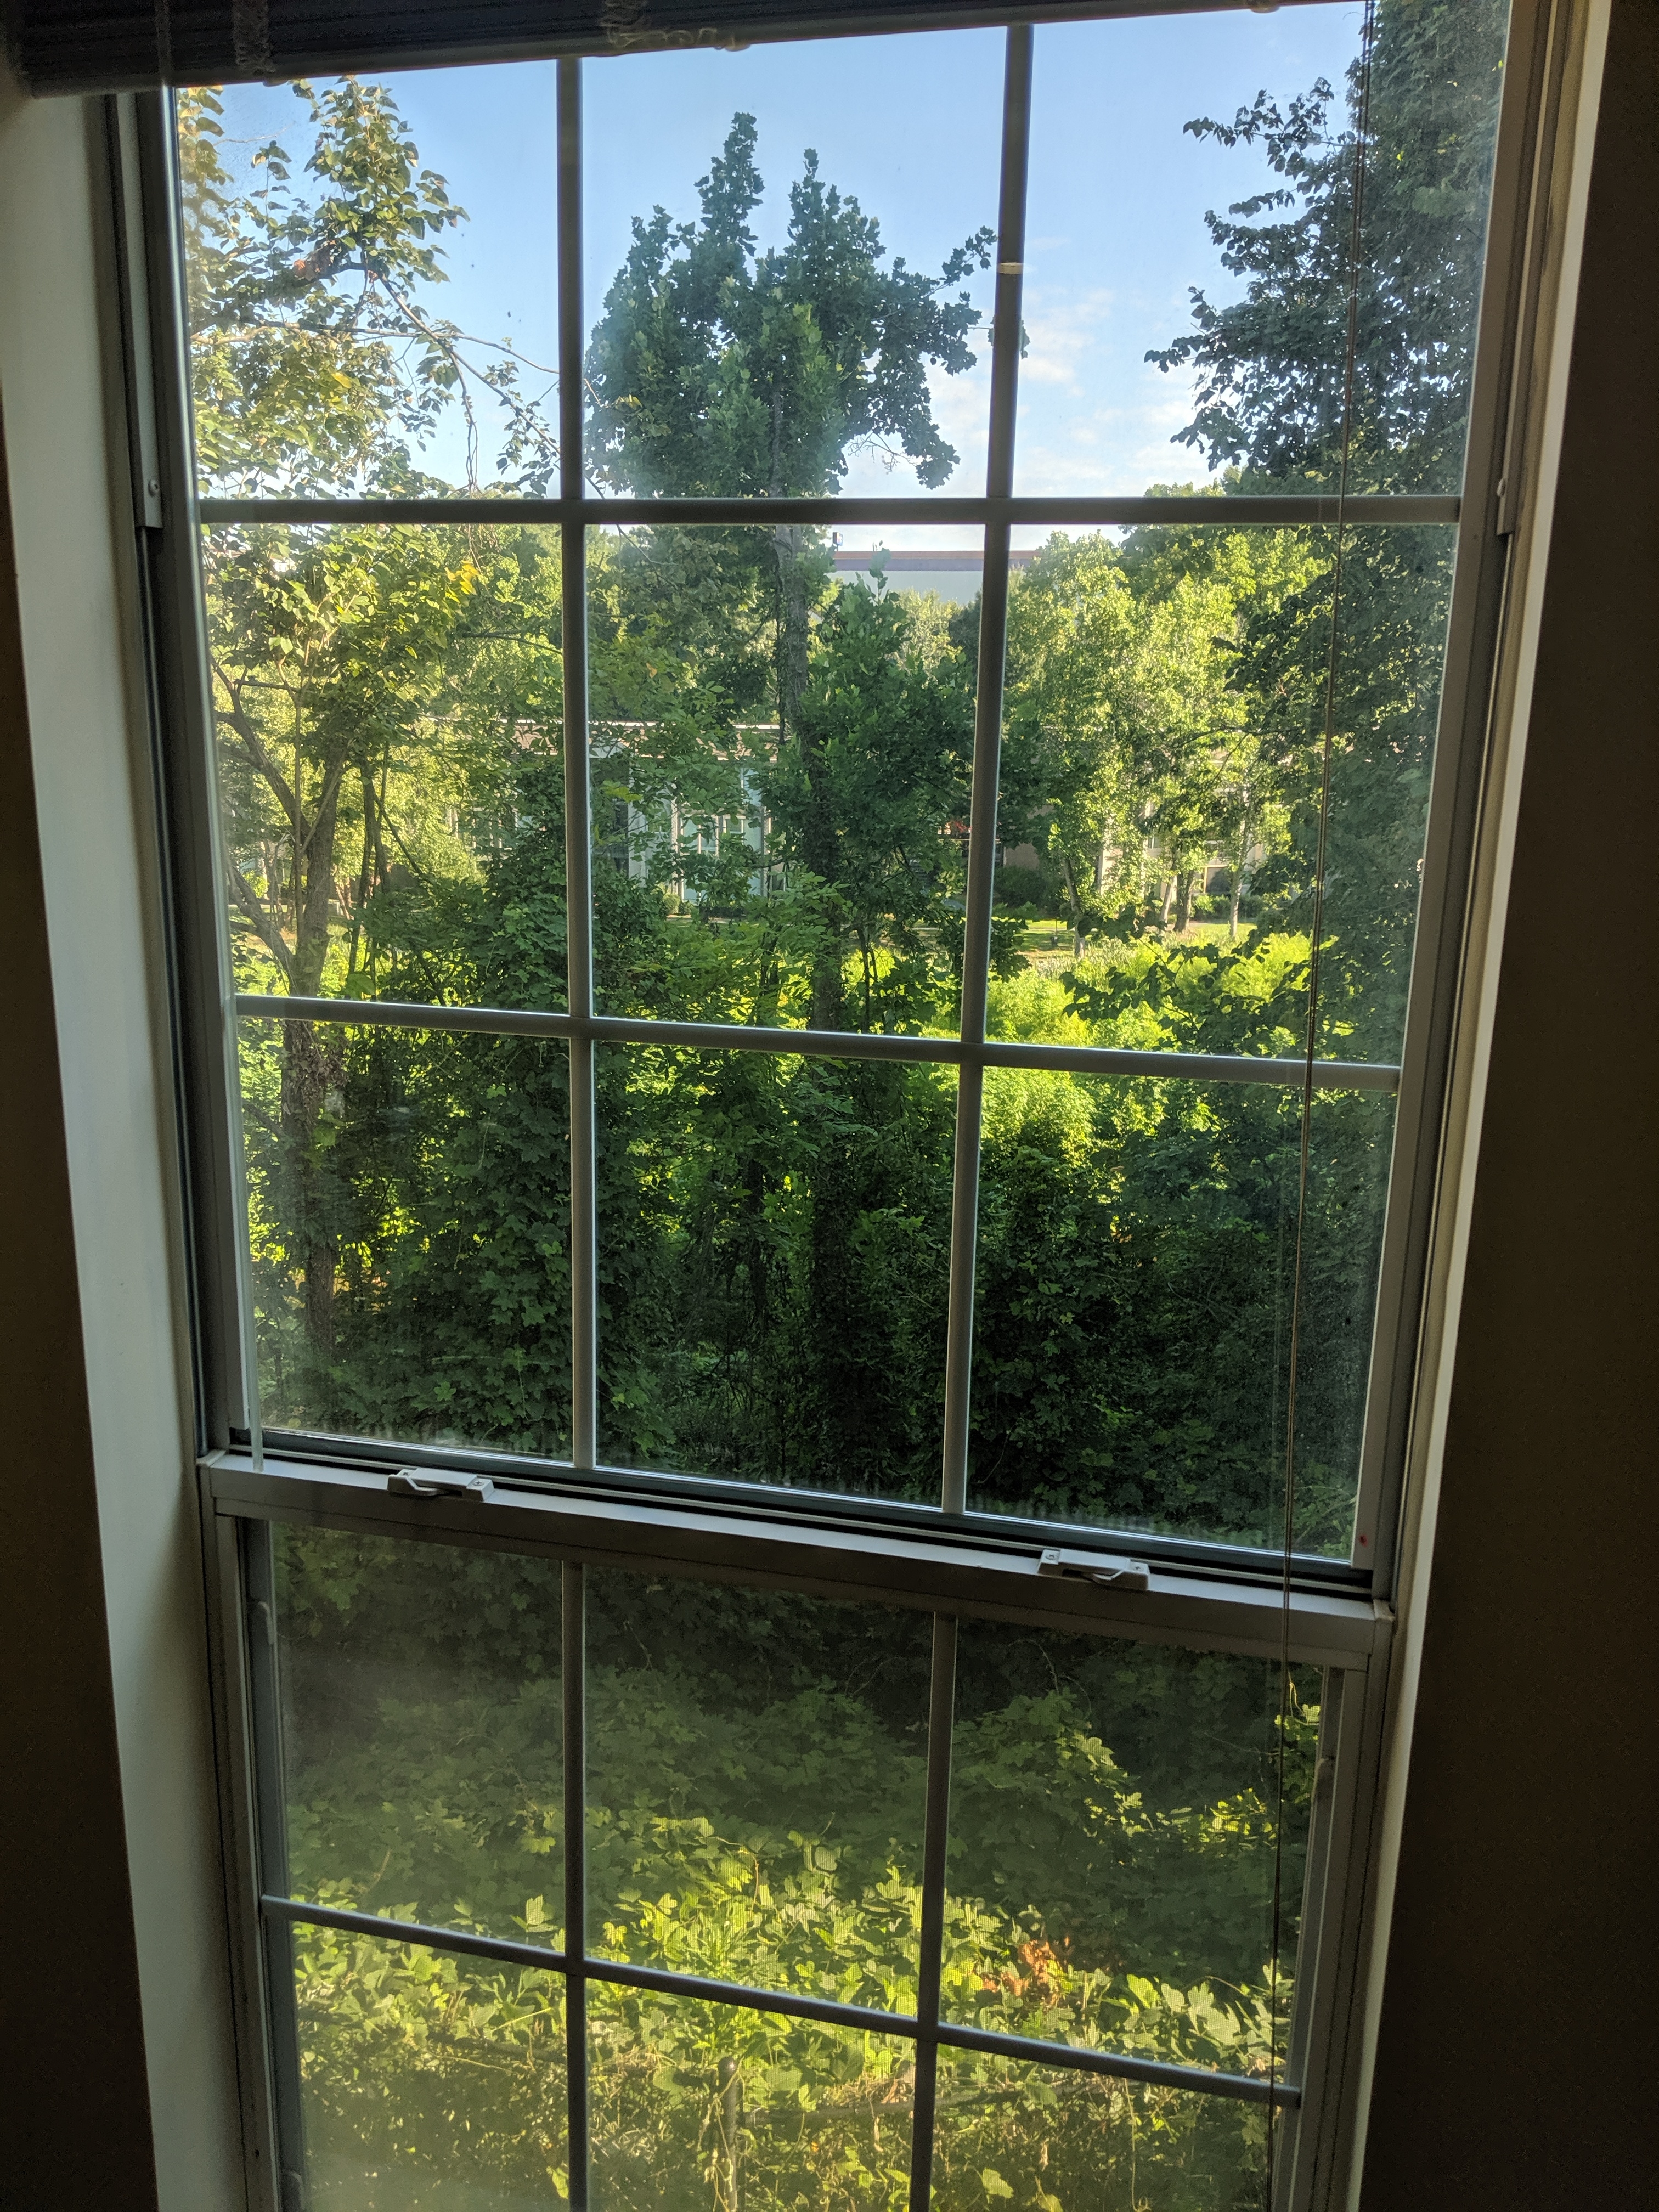 New window baybeee! 